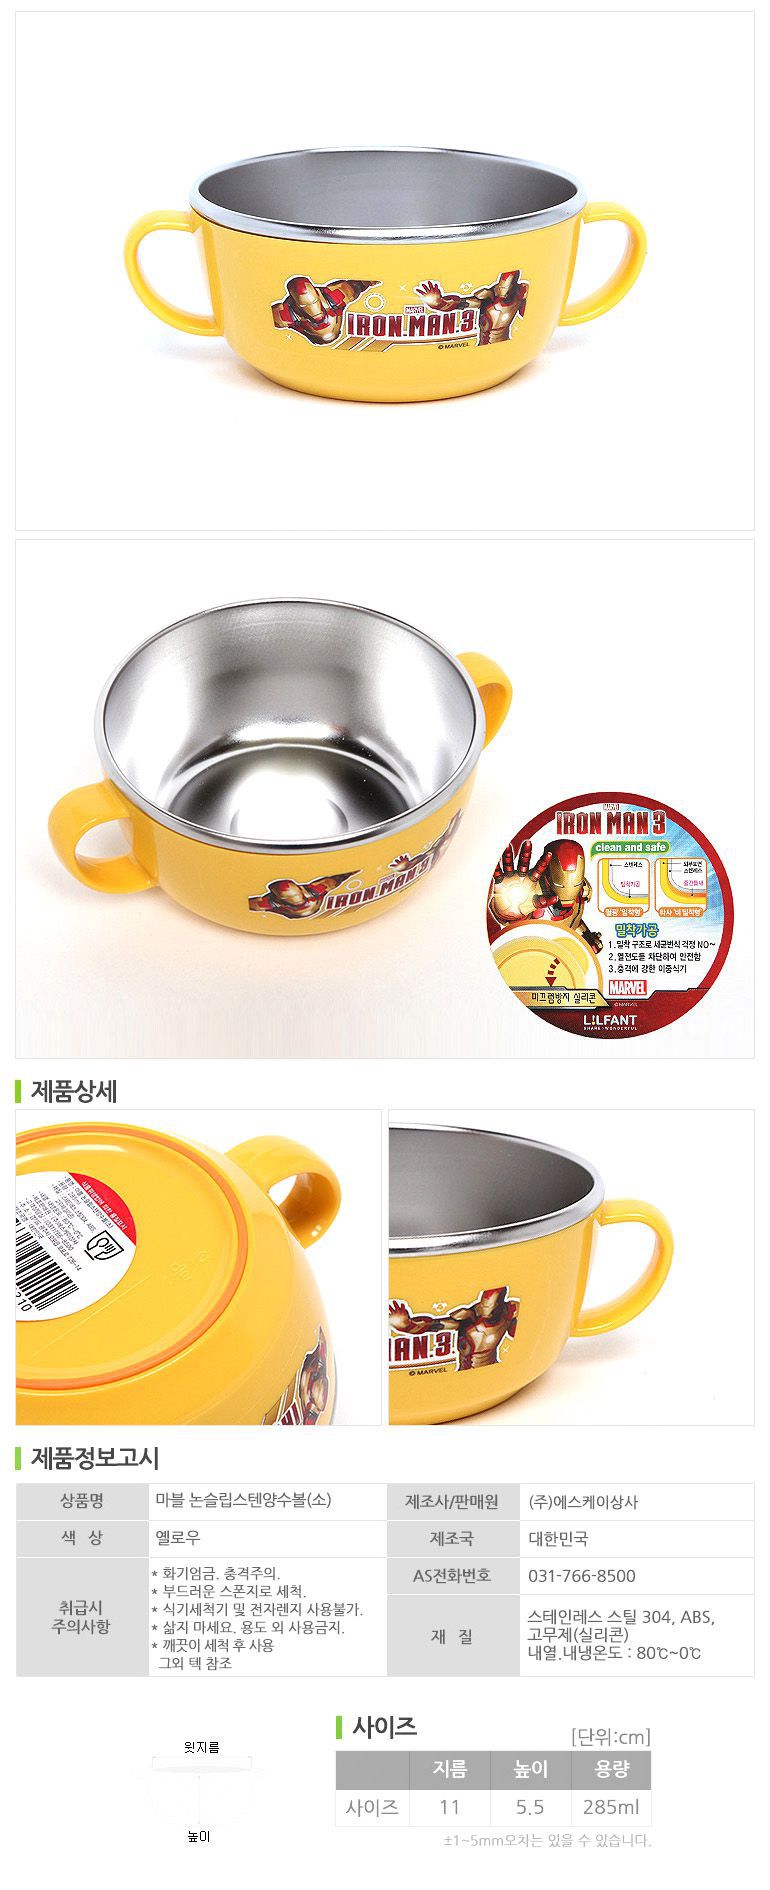 【現貨特價】韓國製鋼鐵人304不鏽鋼雙耳把手小餐碗 / 湯碗